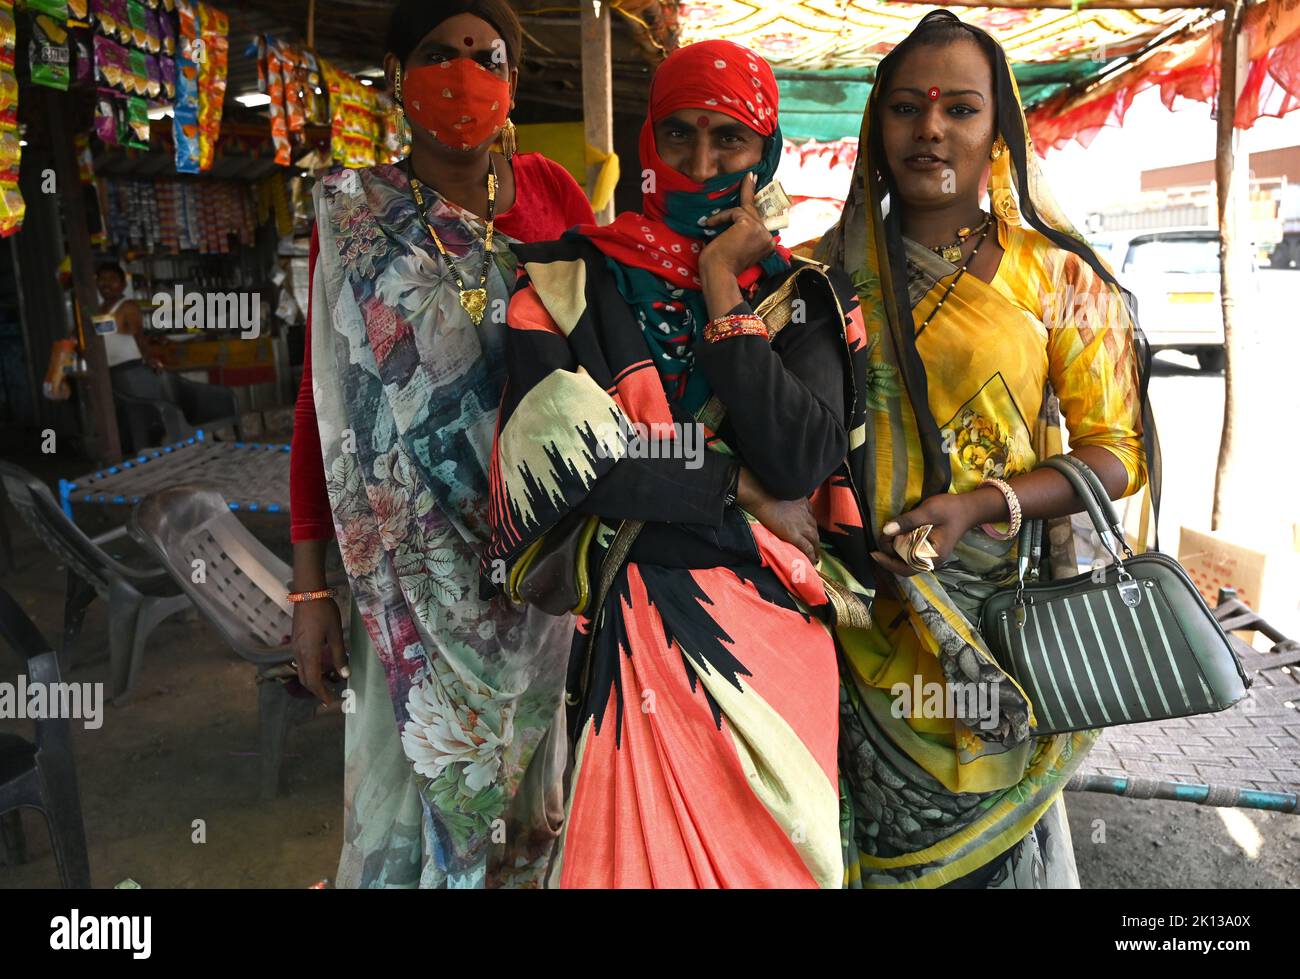 Trois hijras, personnes transgenres, à un bord de route dhaba, essayant de ramasser n'importe quel travail où ils peuvent, Bavla, Gujarat, Inde, Asie Banque D'Images